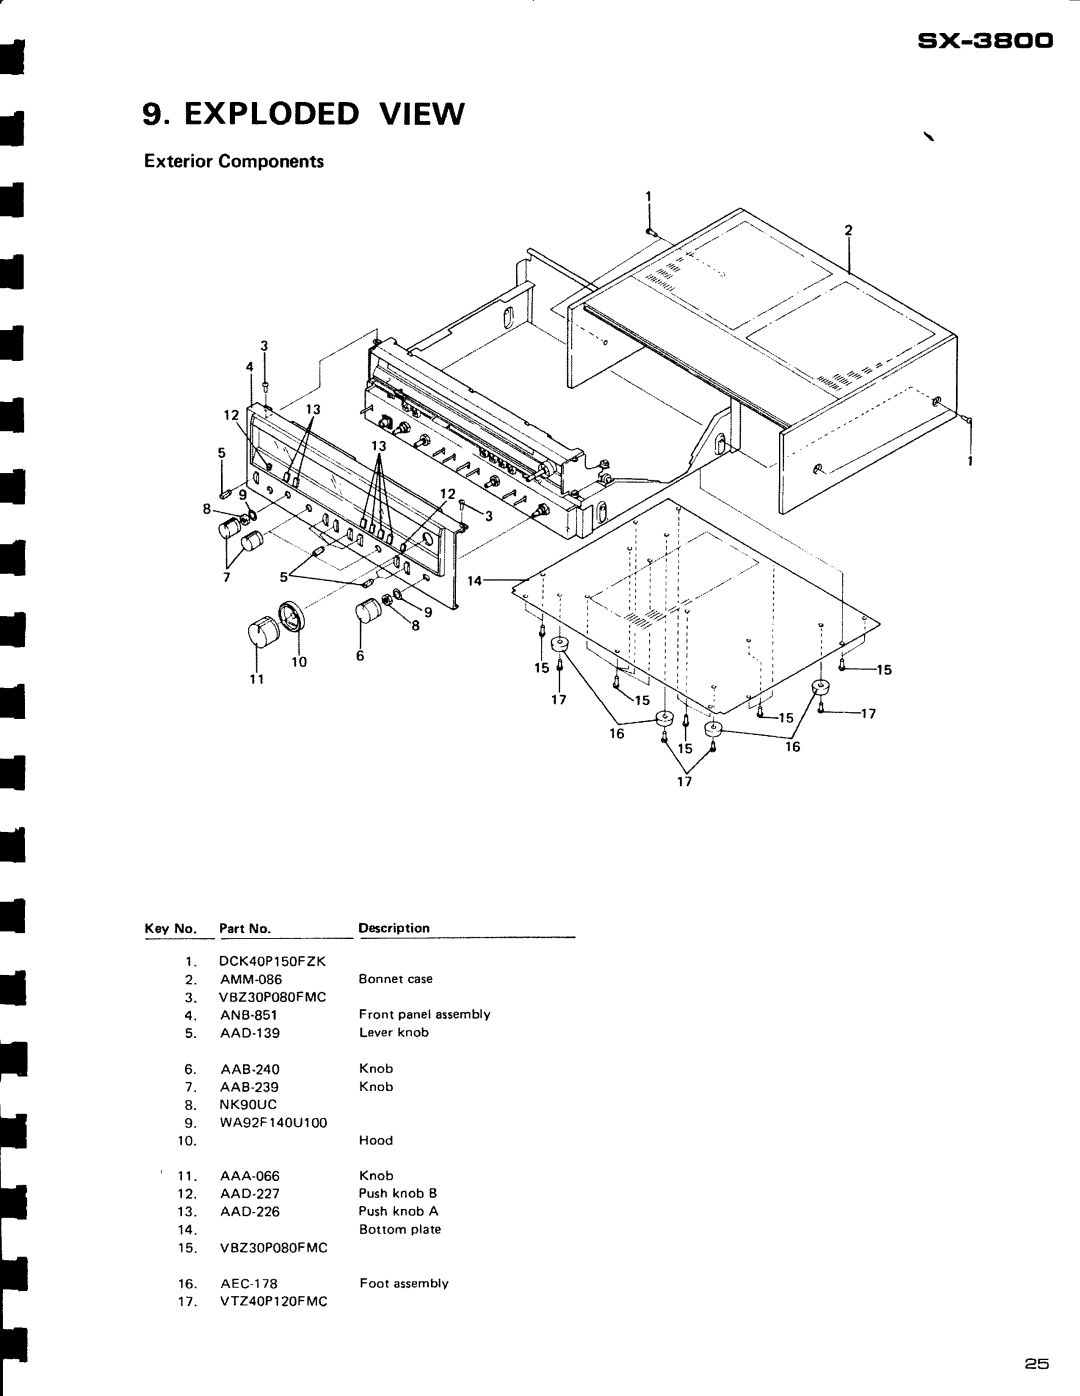 Pioneer SX-3800 manual I I I I, Explodedview, Eix-3Elclcl, ExteriorComponents 